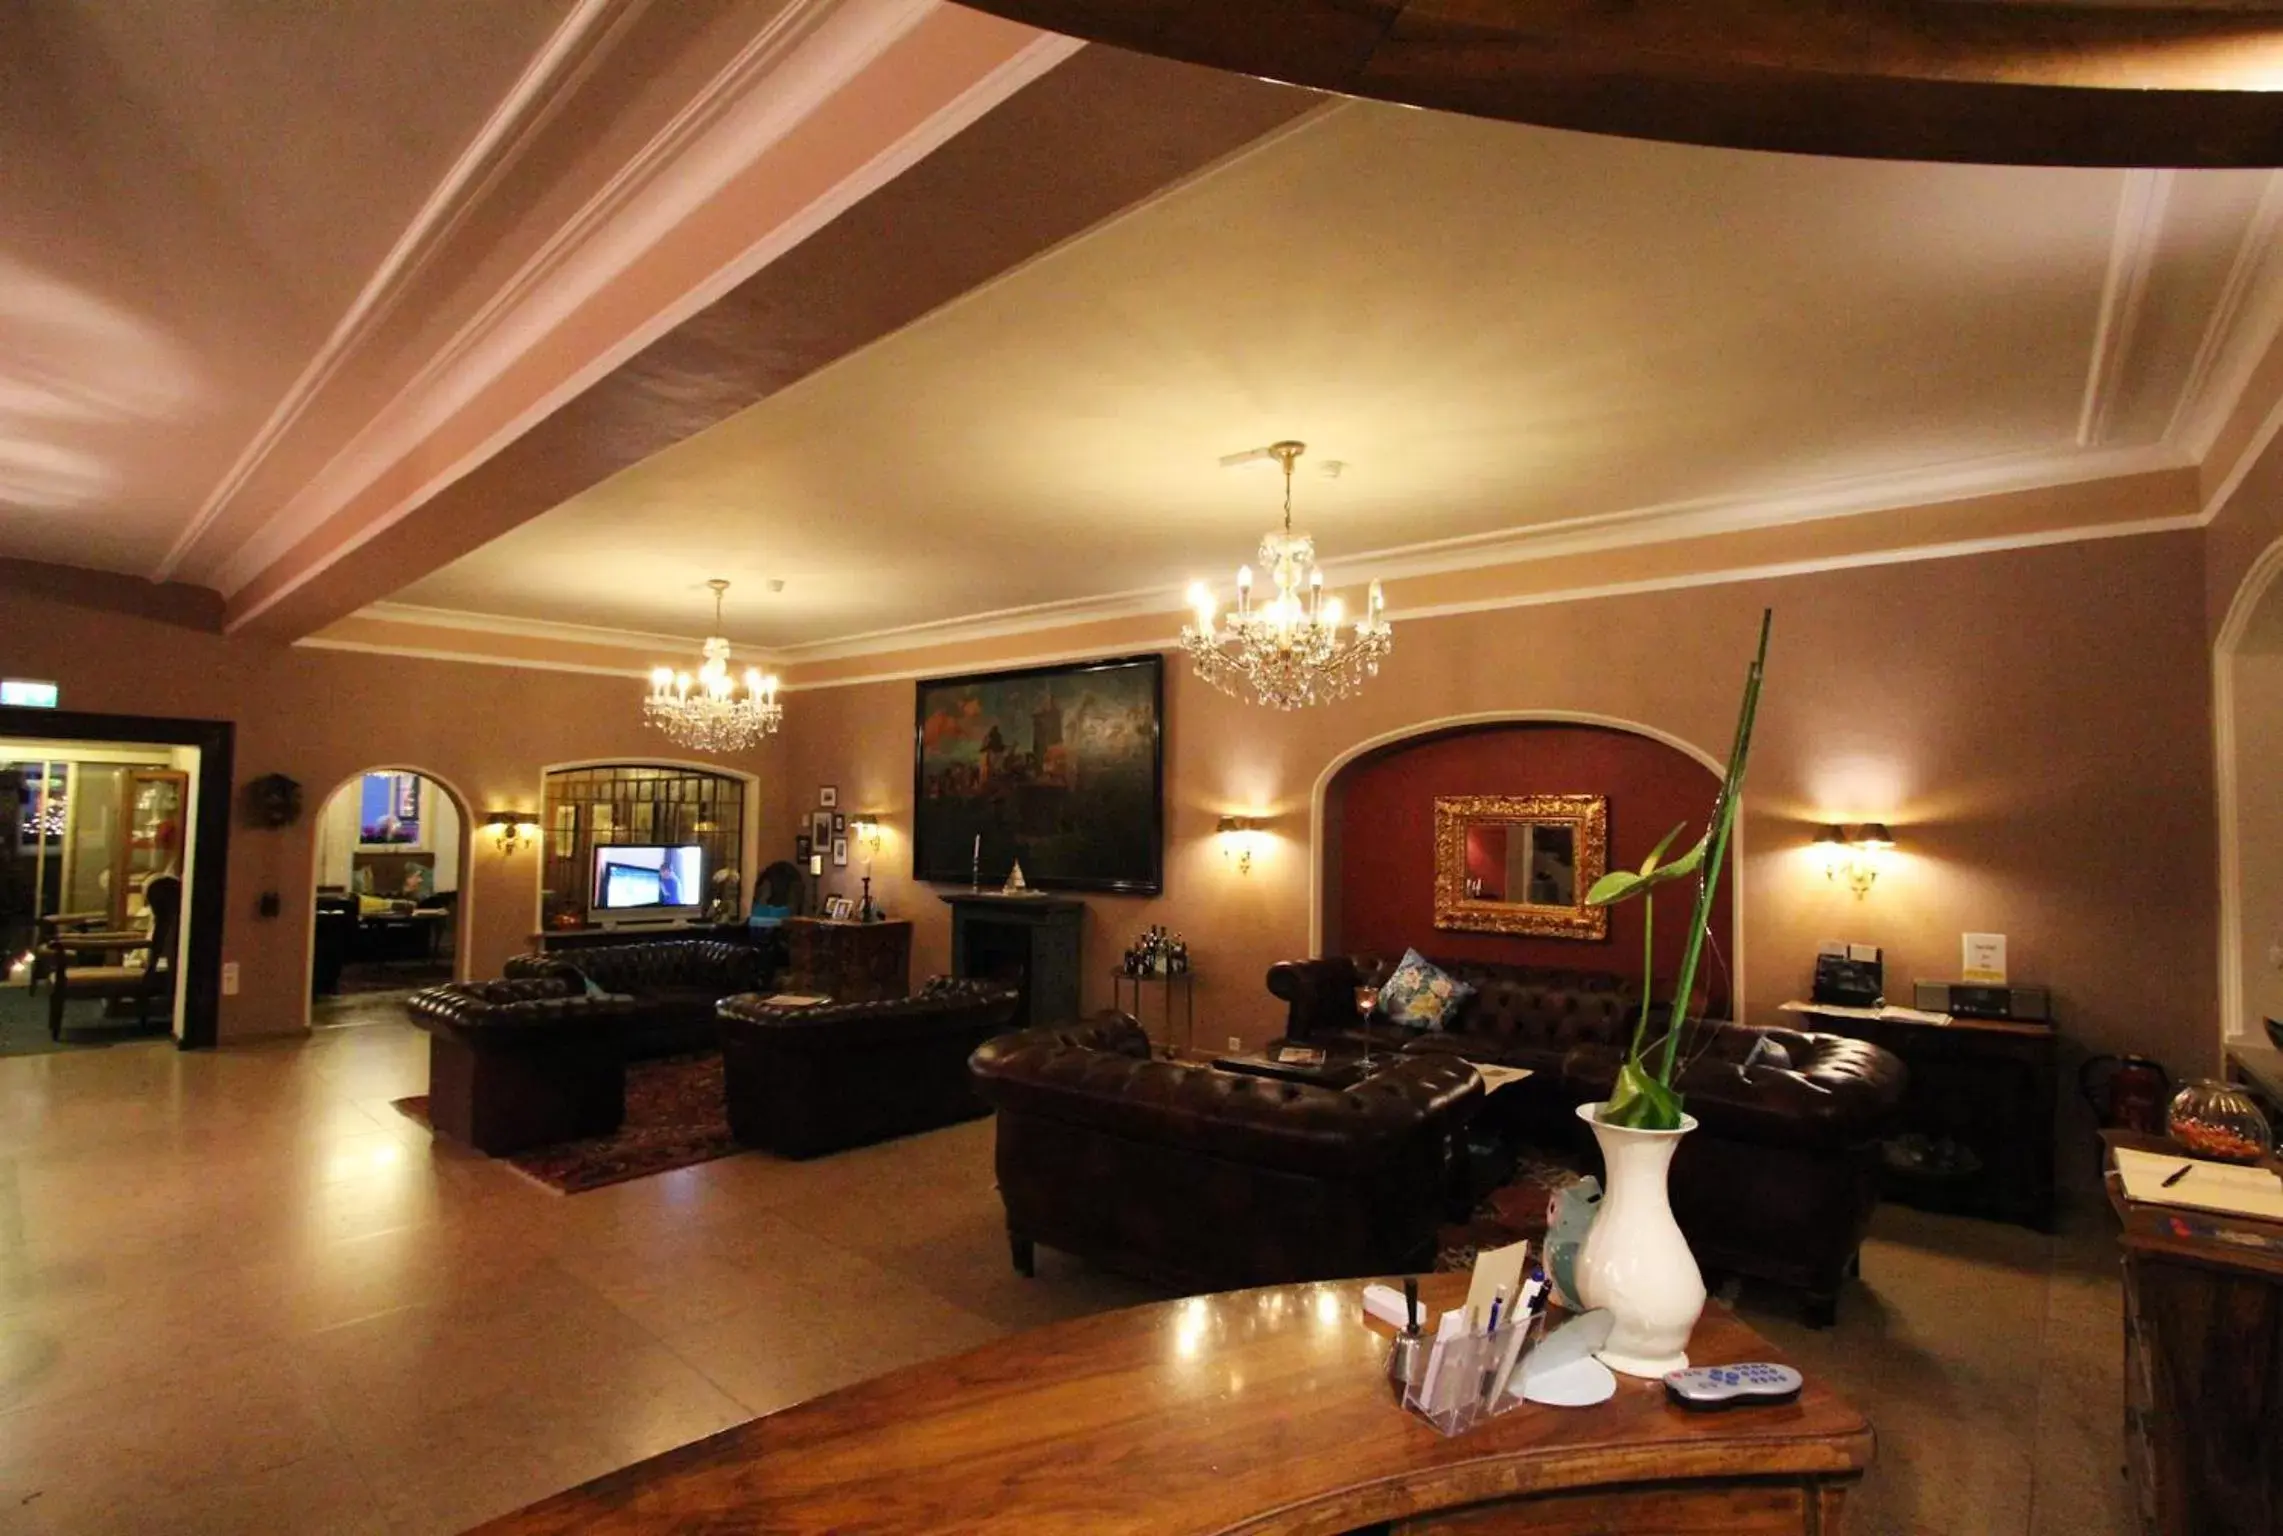 Lobby or reception in Historik Hotel Goldener Hirsch Rothenburg